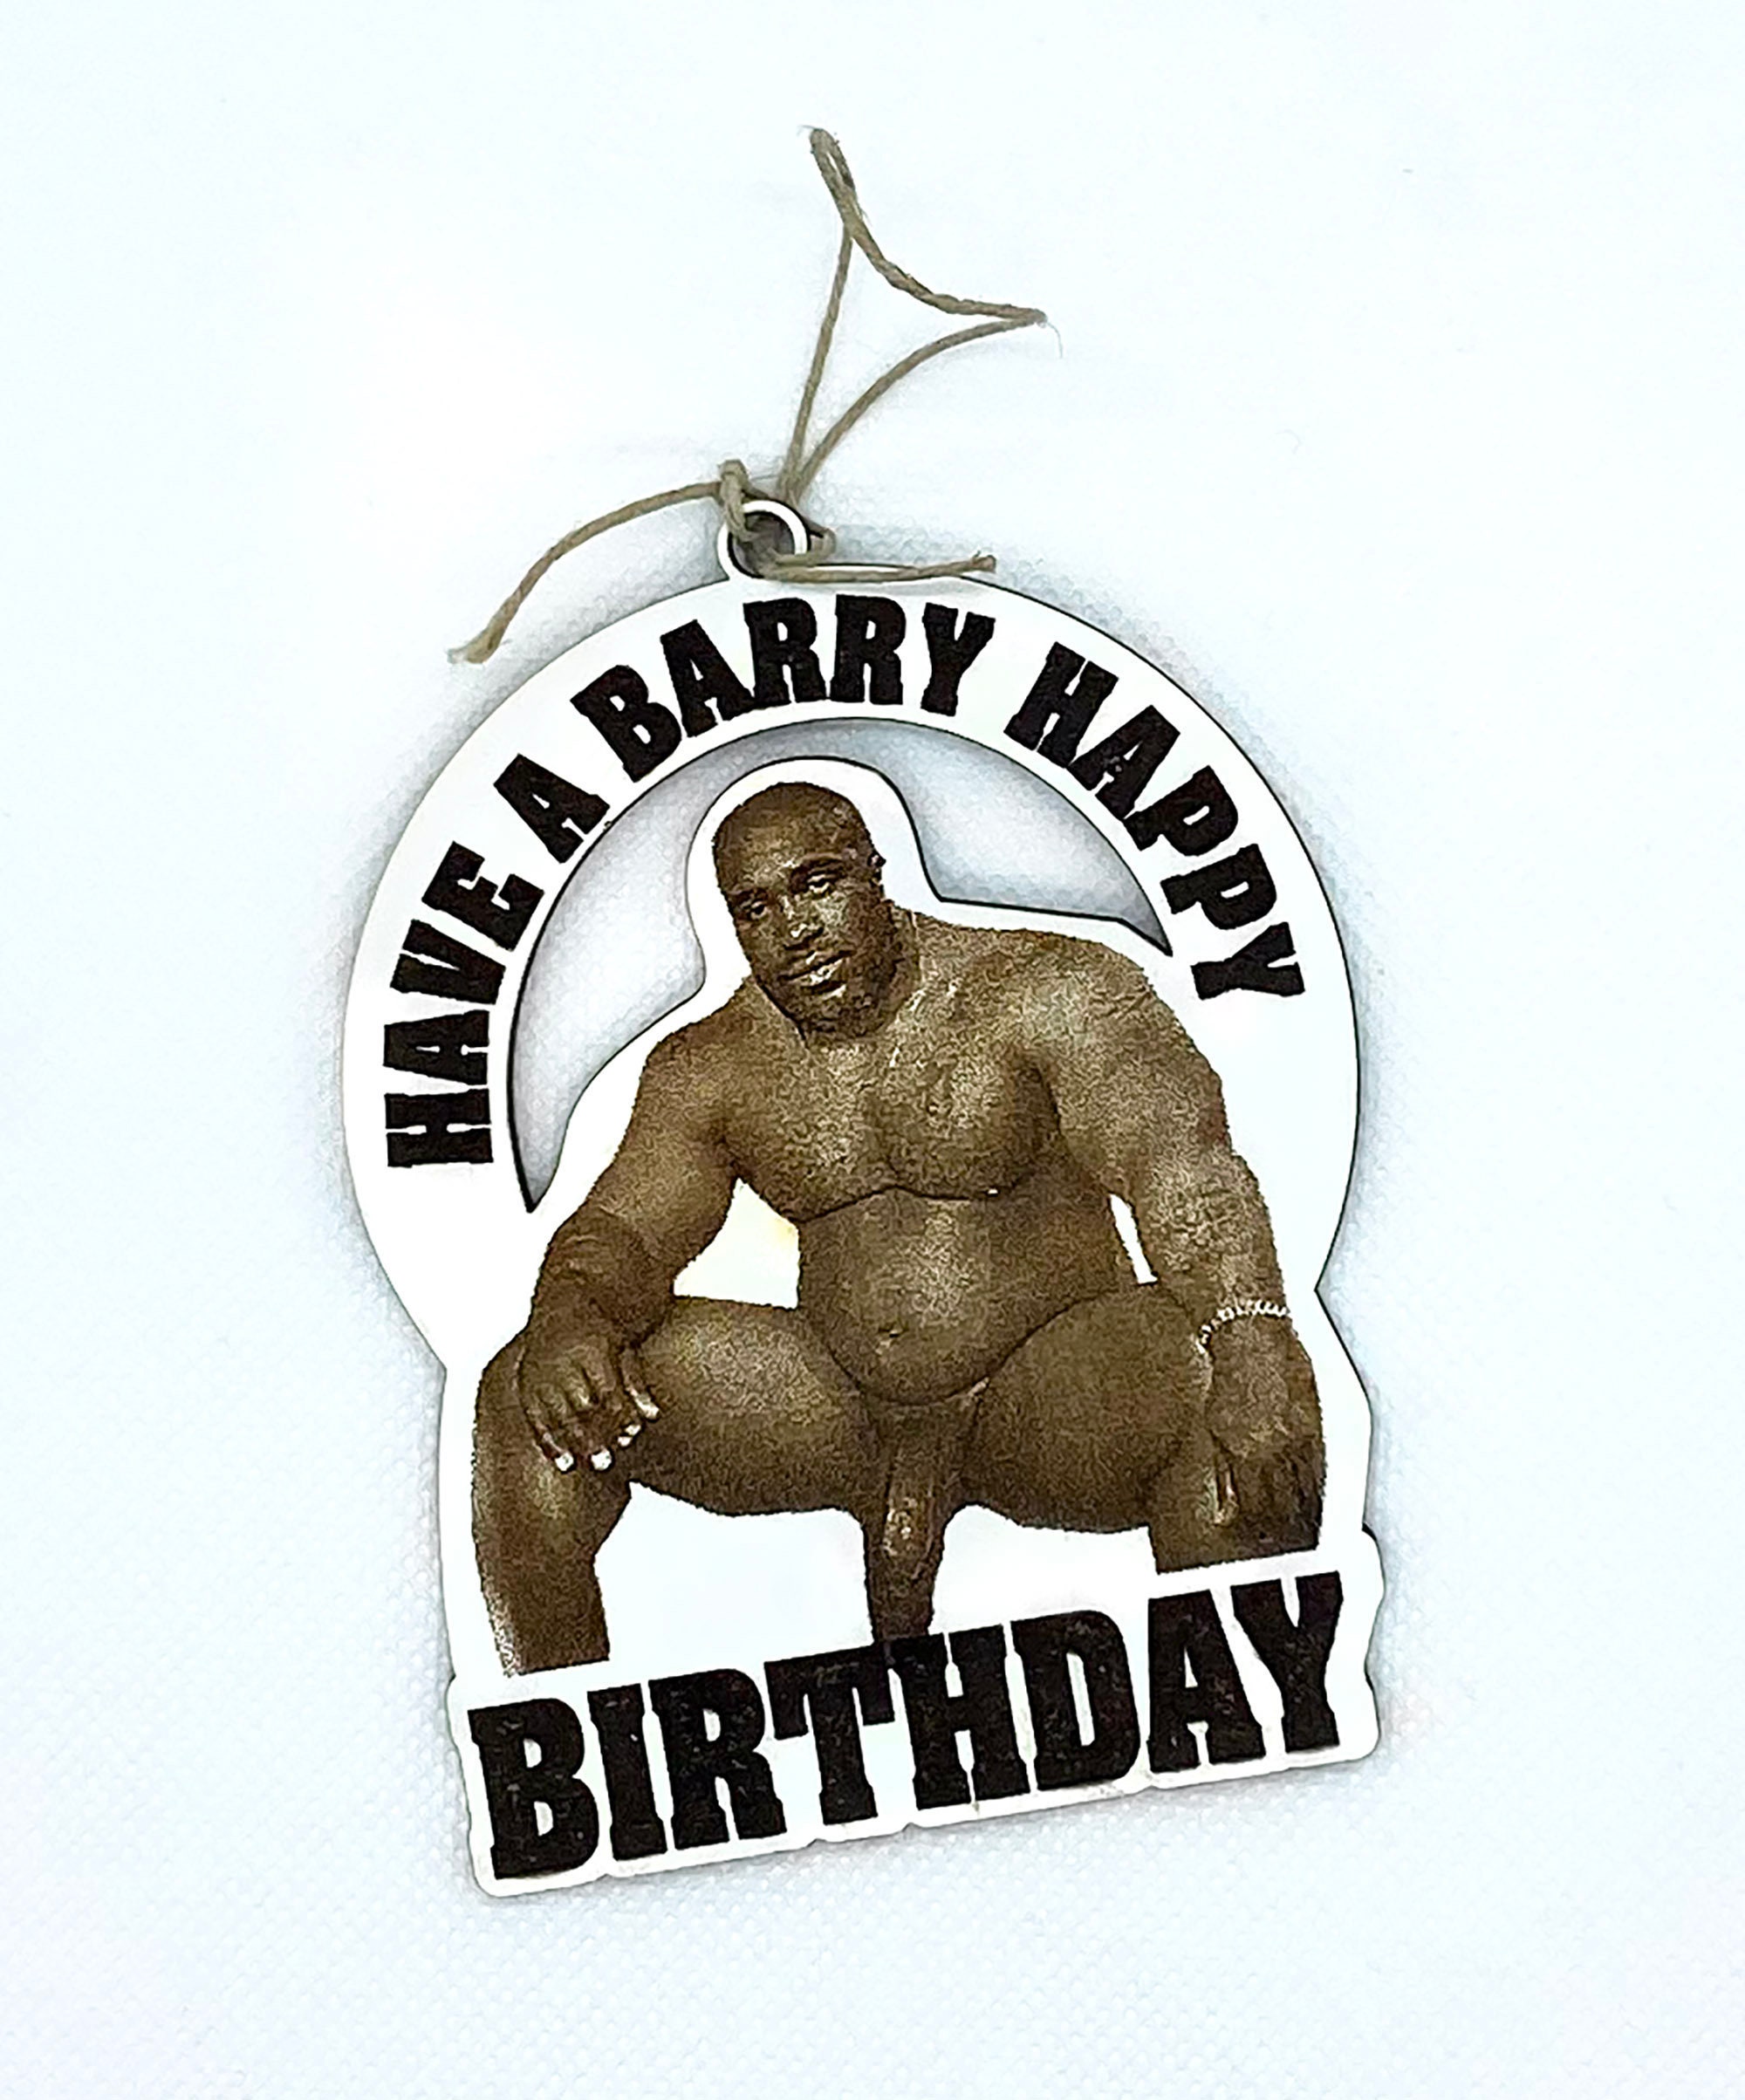 Barry Wood Birthday Gift Tag Funny Gag Birthday Gift - Etsy